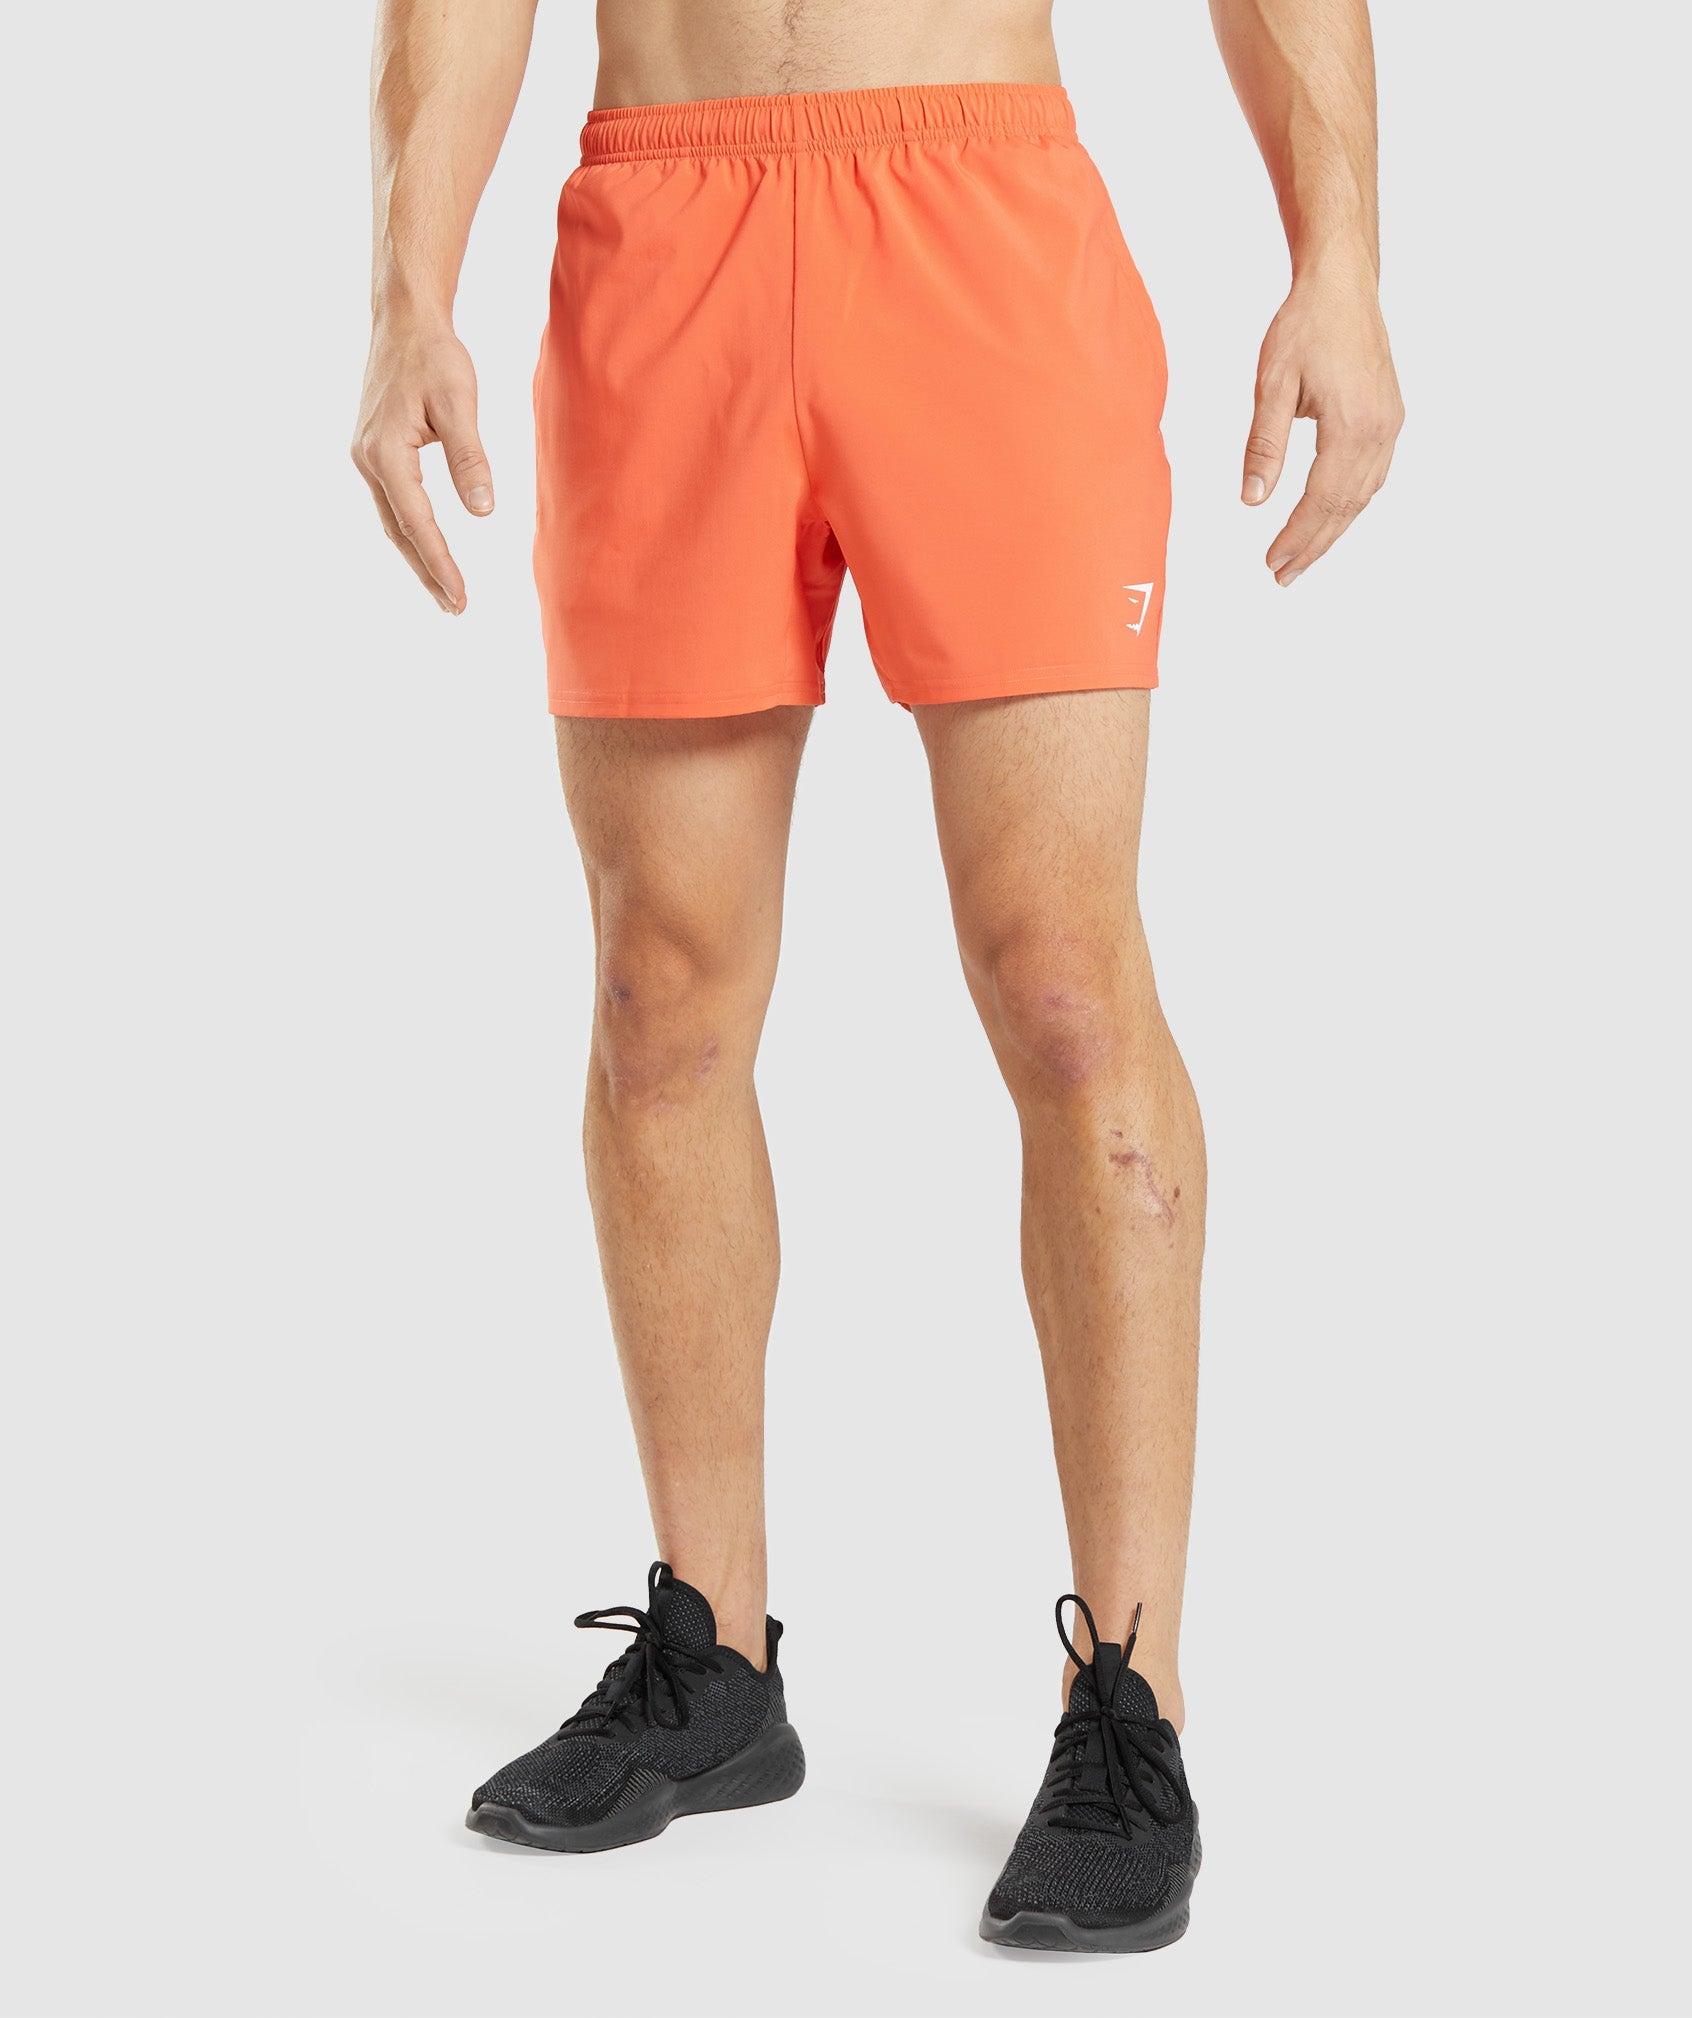 Gymshark Orange Active Shorts for Men